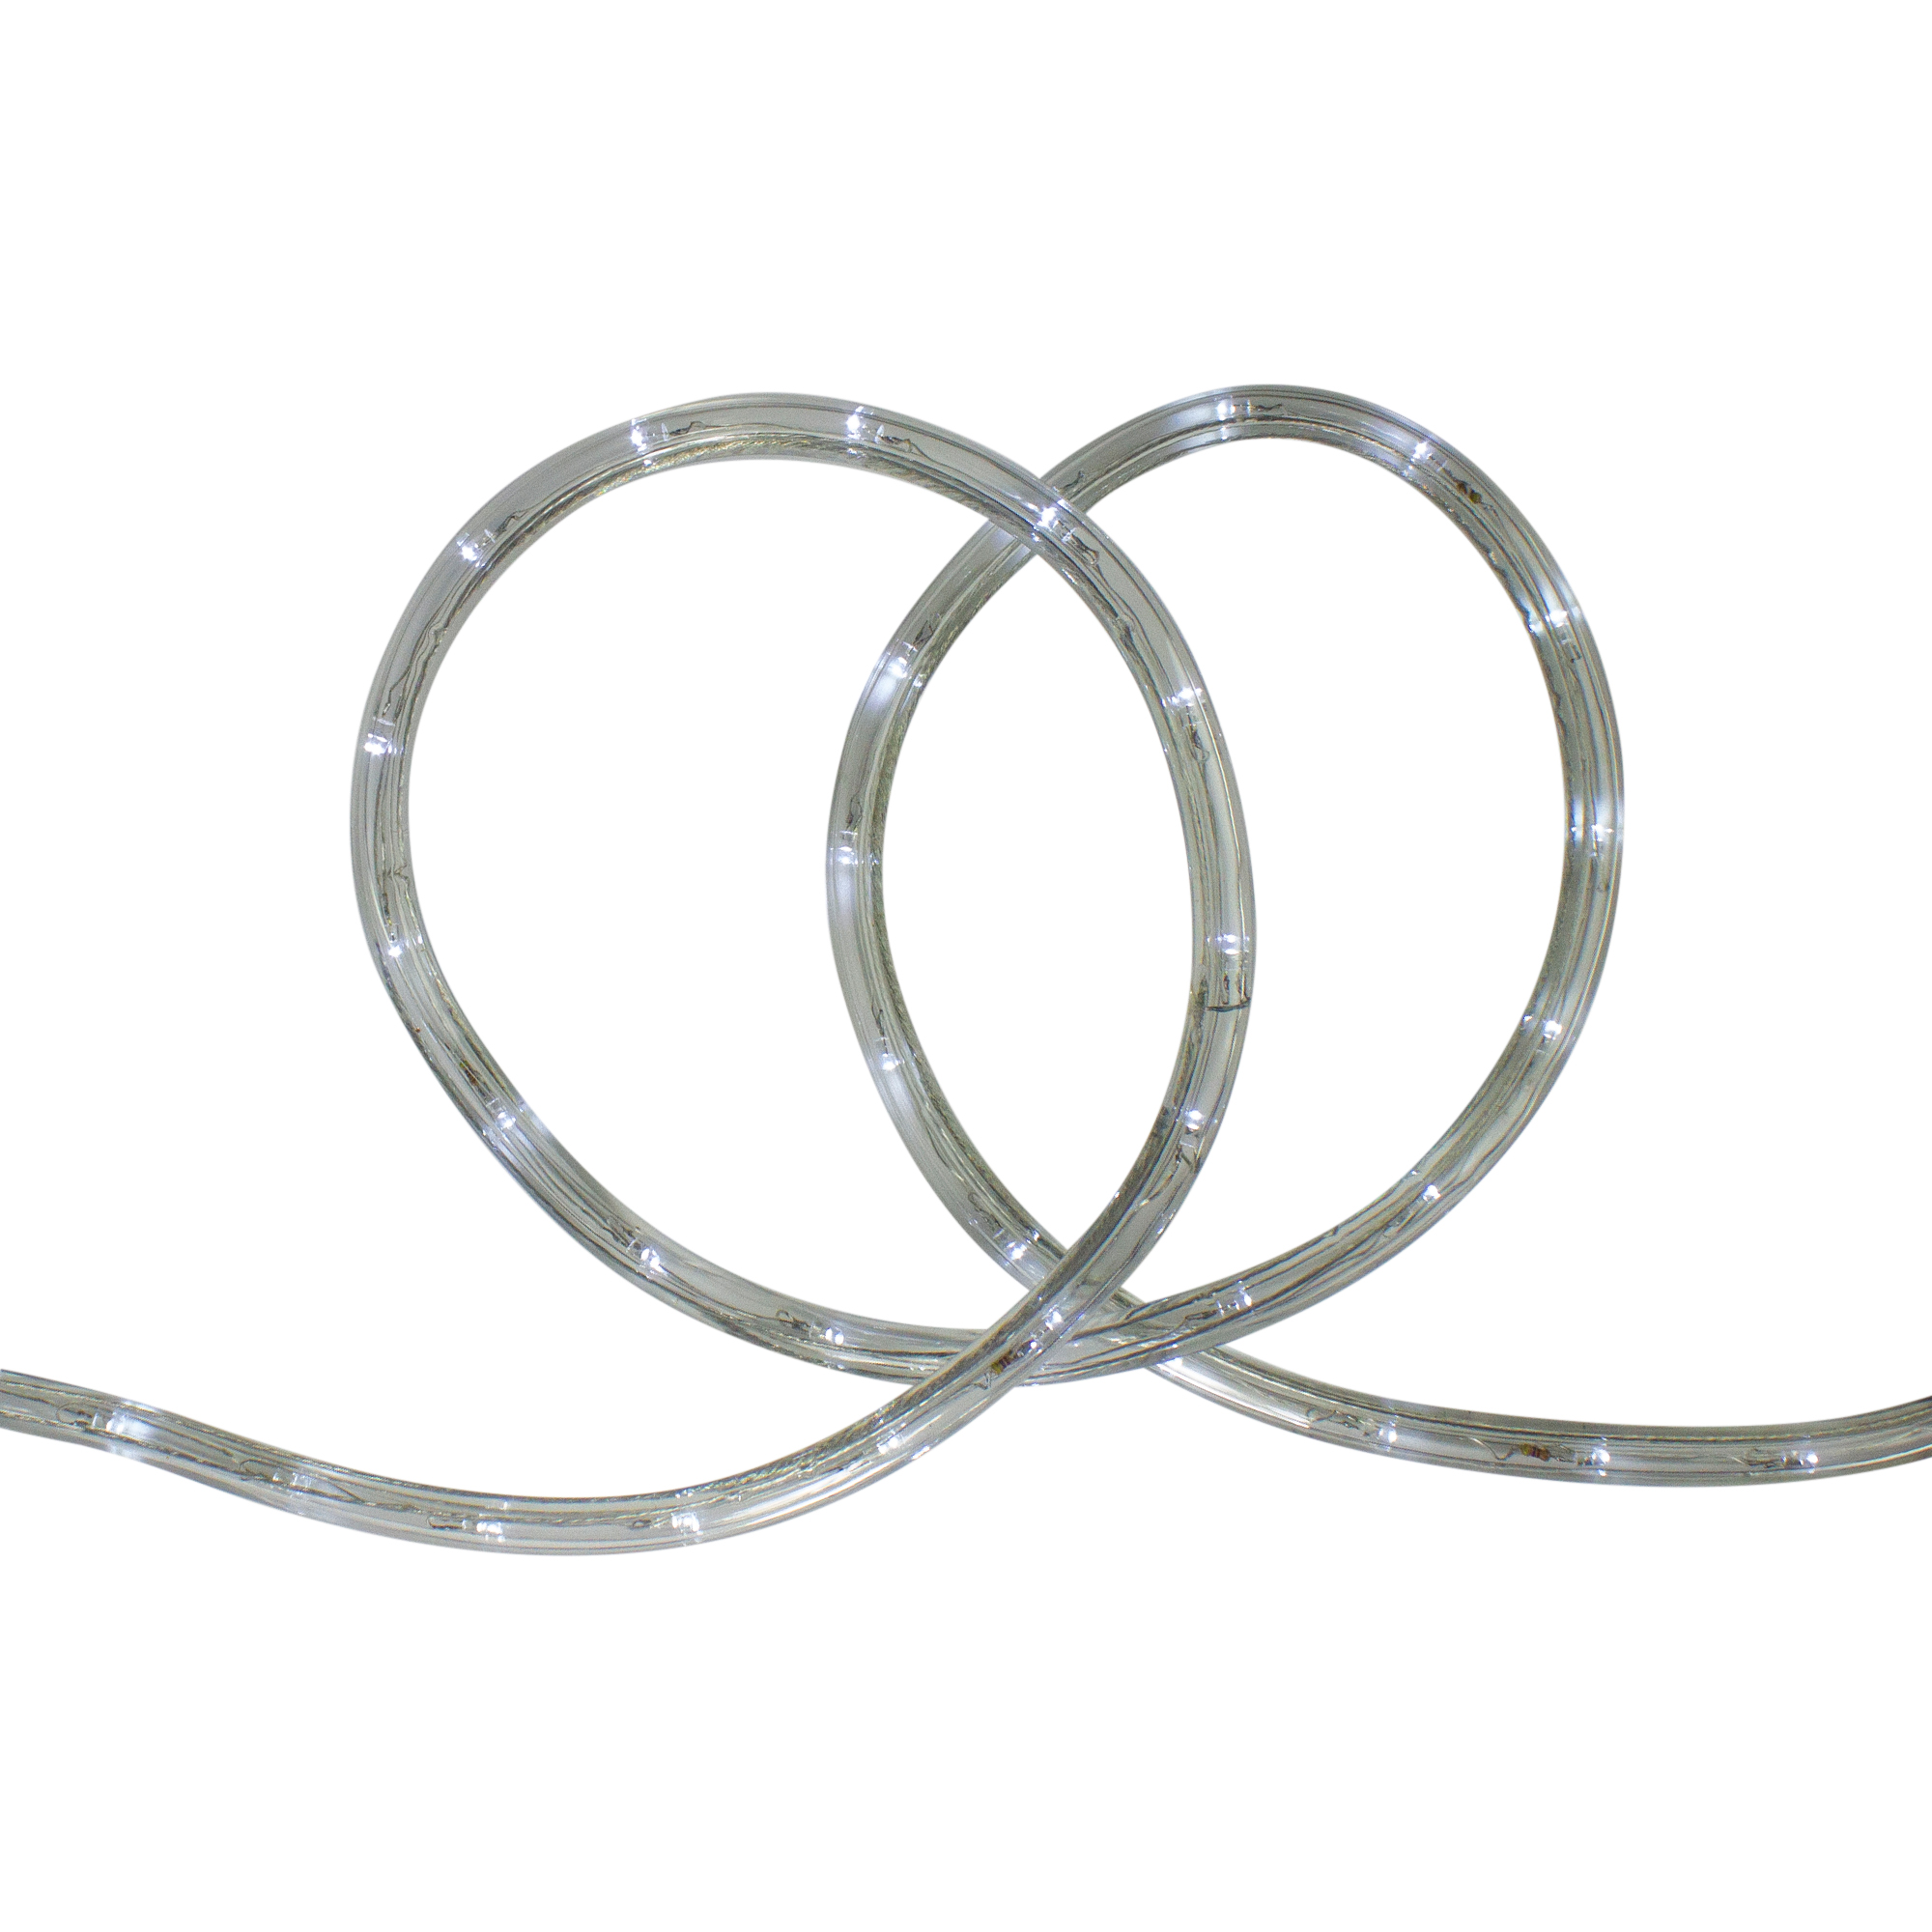 Hofert 96' Multi-Color LED Flexible Christmas Rope Light - image 2 of 3